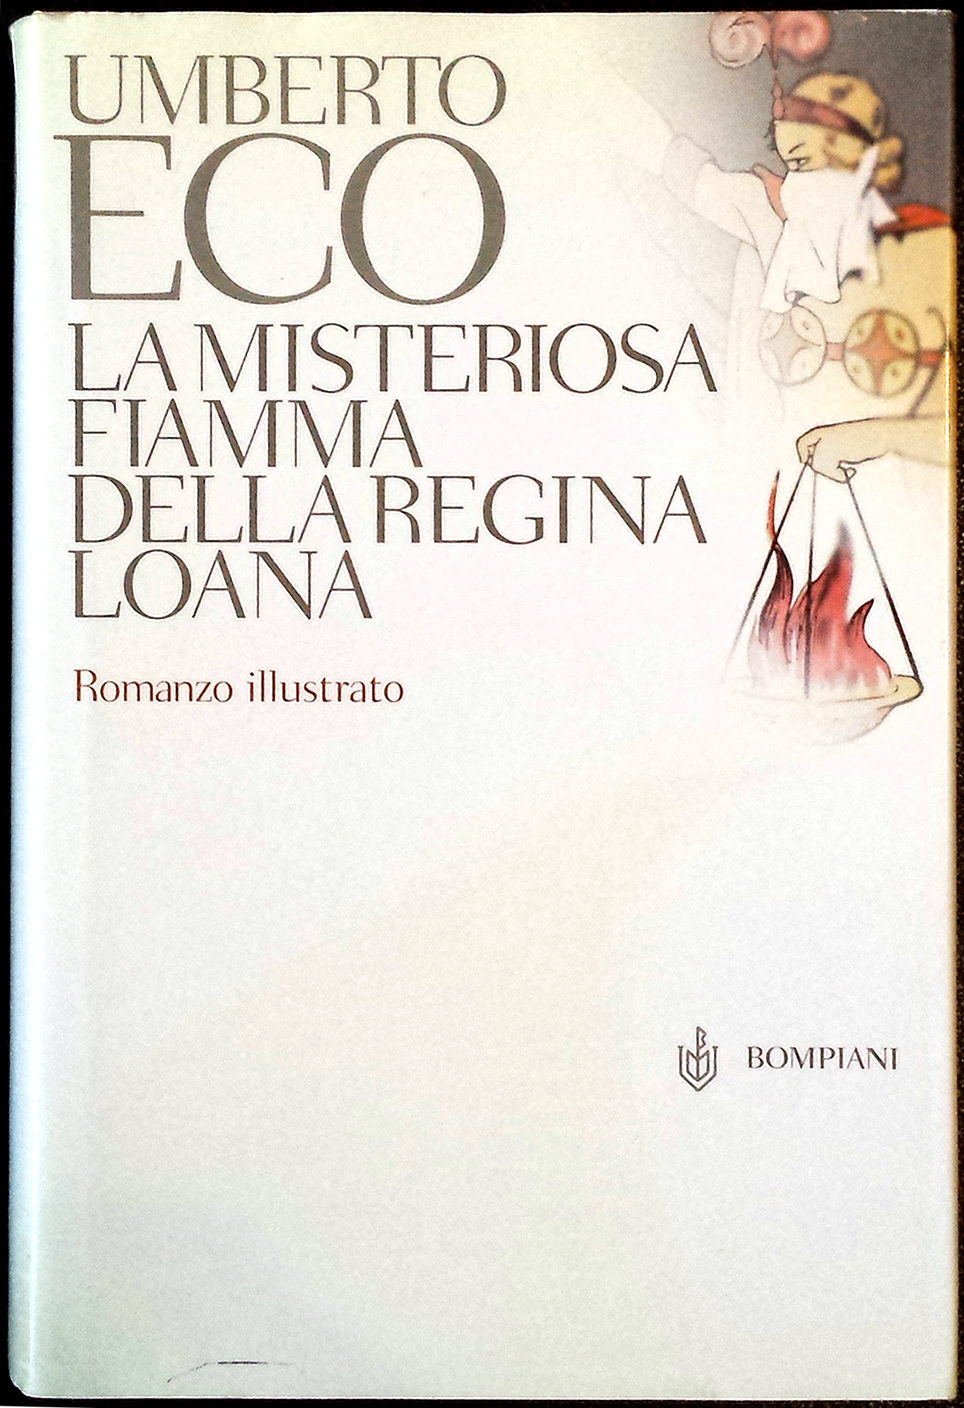 Image of cover of 'La misteriosa fiamma della regina loana by Umberto Eco, Italian language Edition